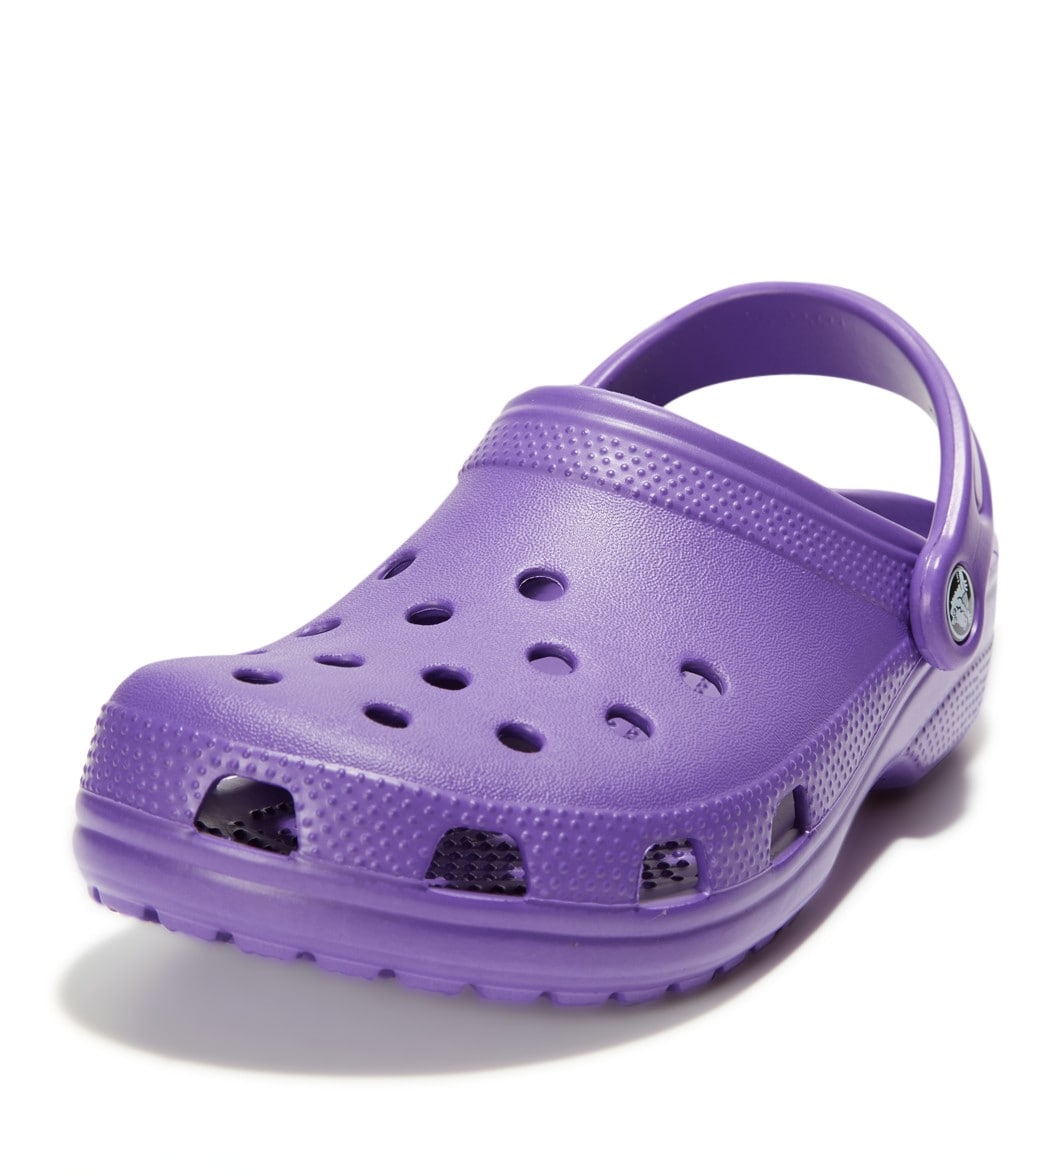 Crocs Classic Clogs - Neon Purple M5W7 - Swimoutlet.com